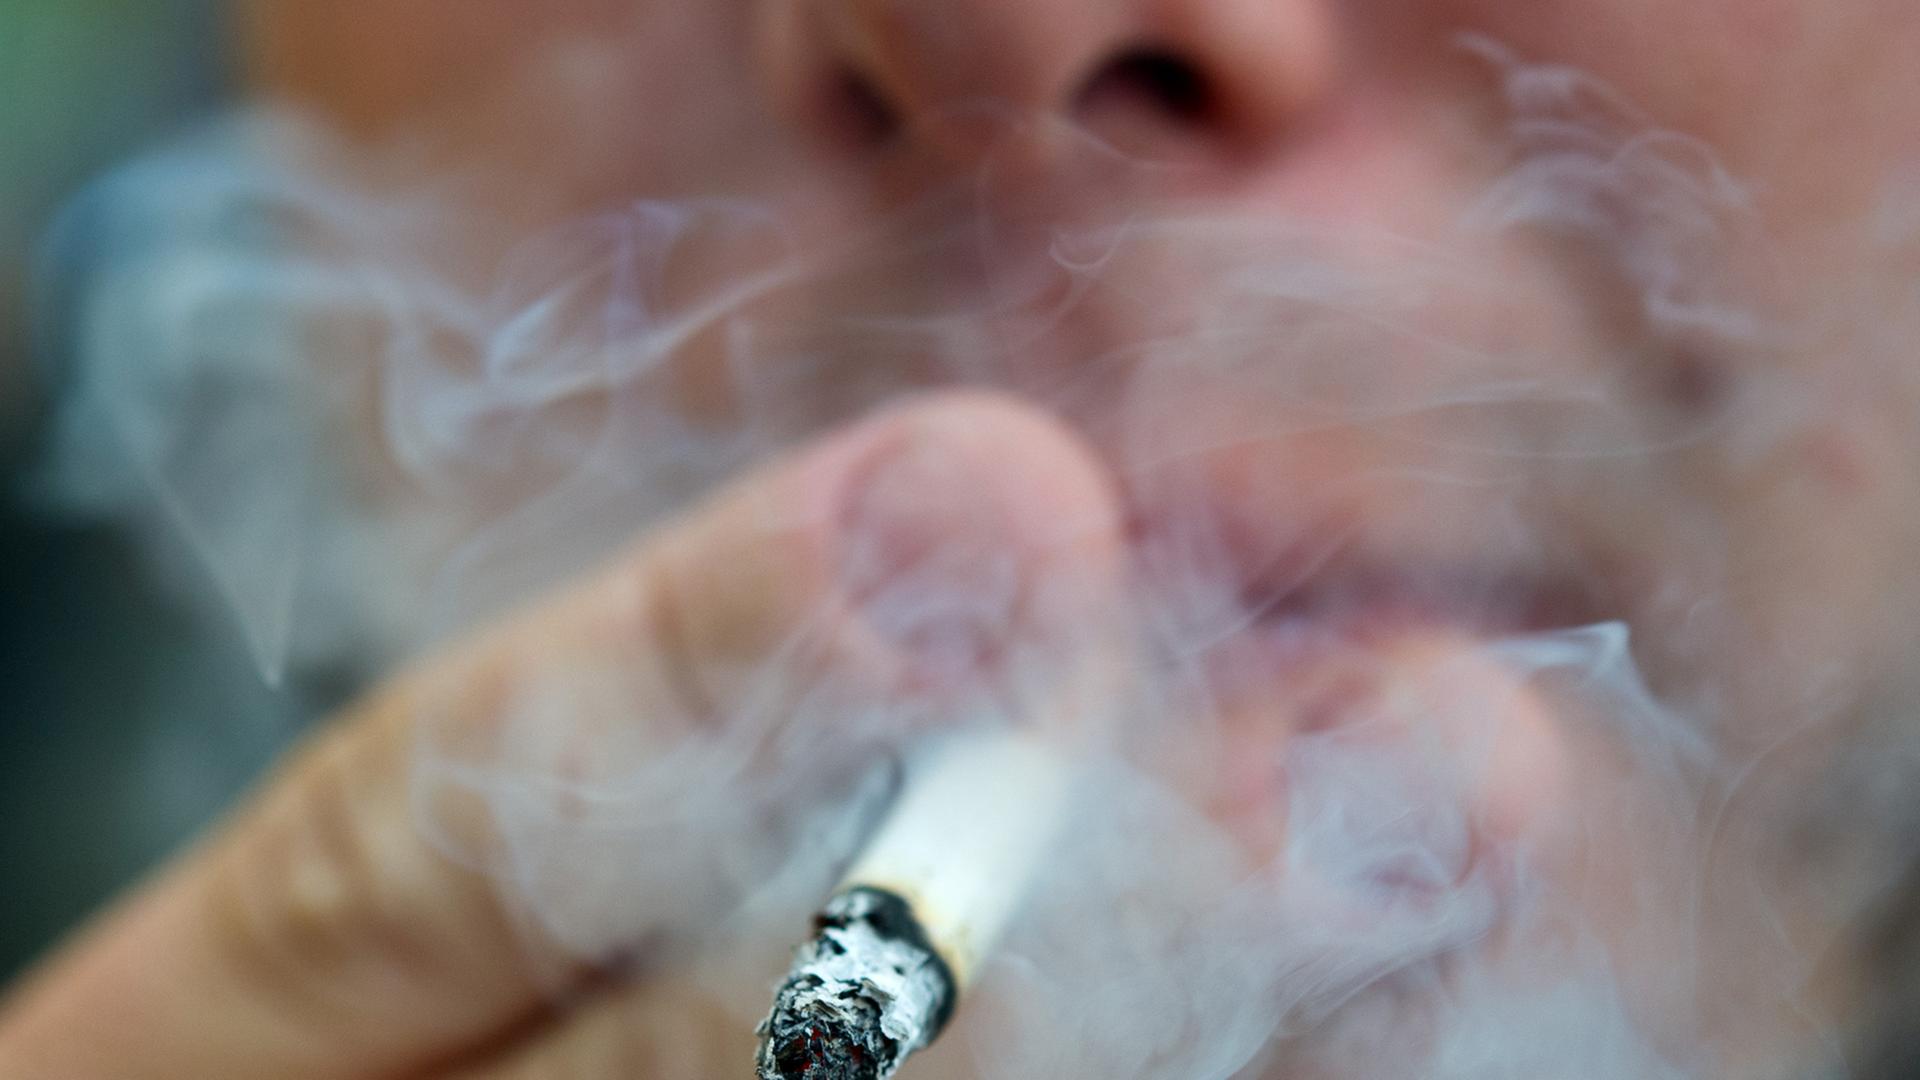 Gesundheitsschutz - Britisches Parlament diskutiert jährliche Anhebung des Mindestalters fürs Rauchen